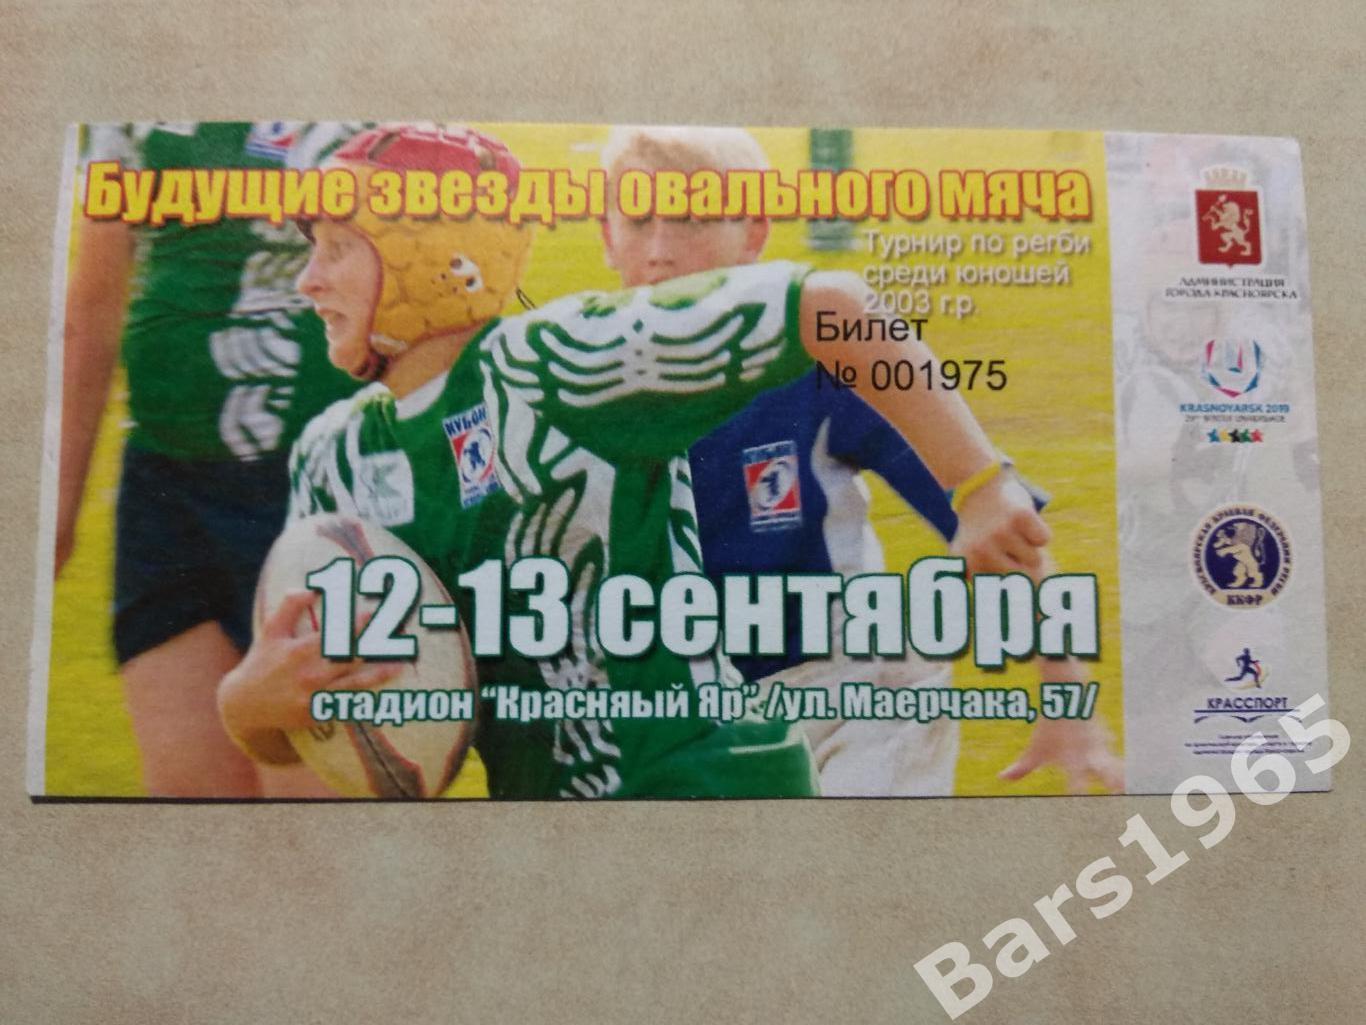 Красноярск Будущие звезды овального мяча Турнир по регби среди юношей 2003 г.р.